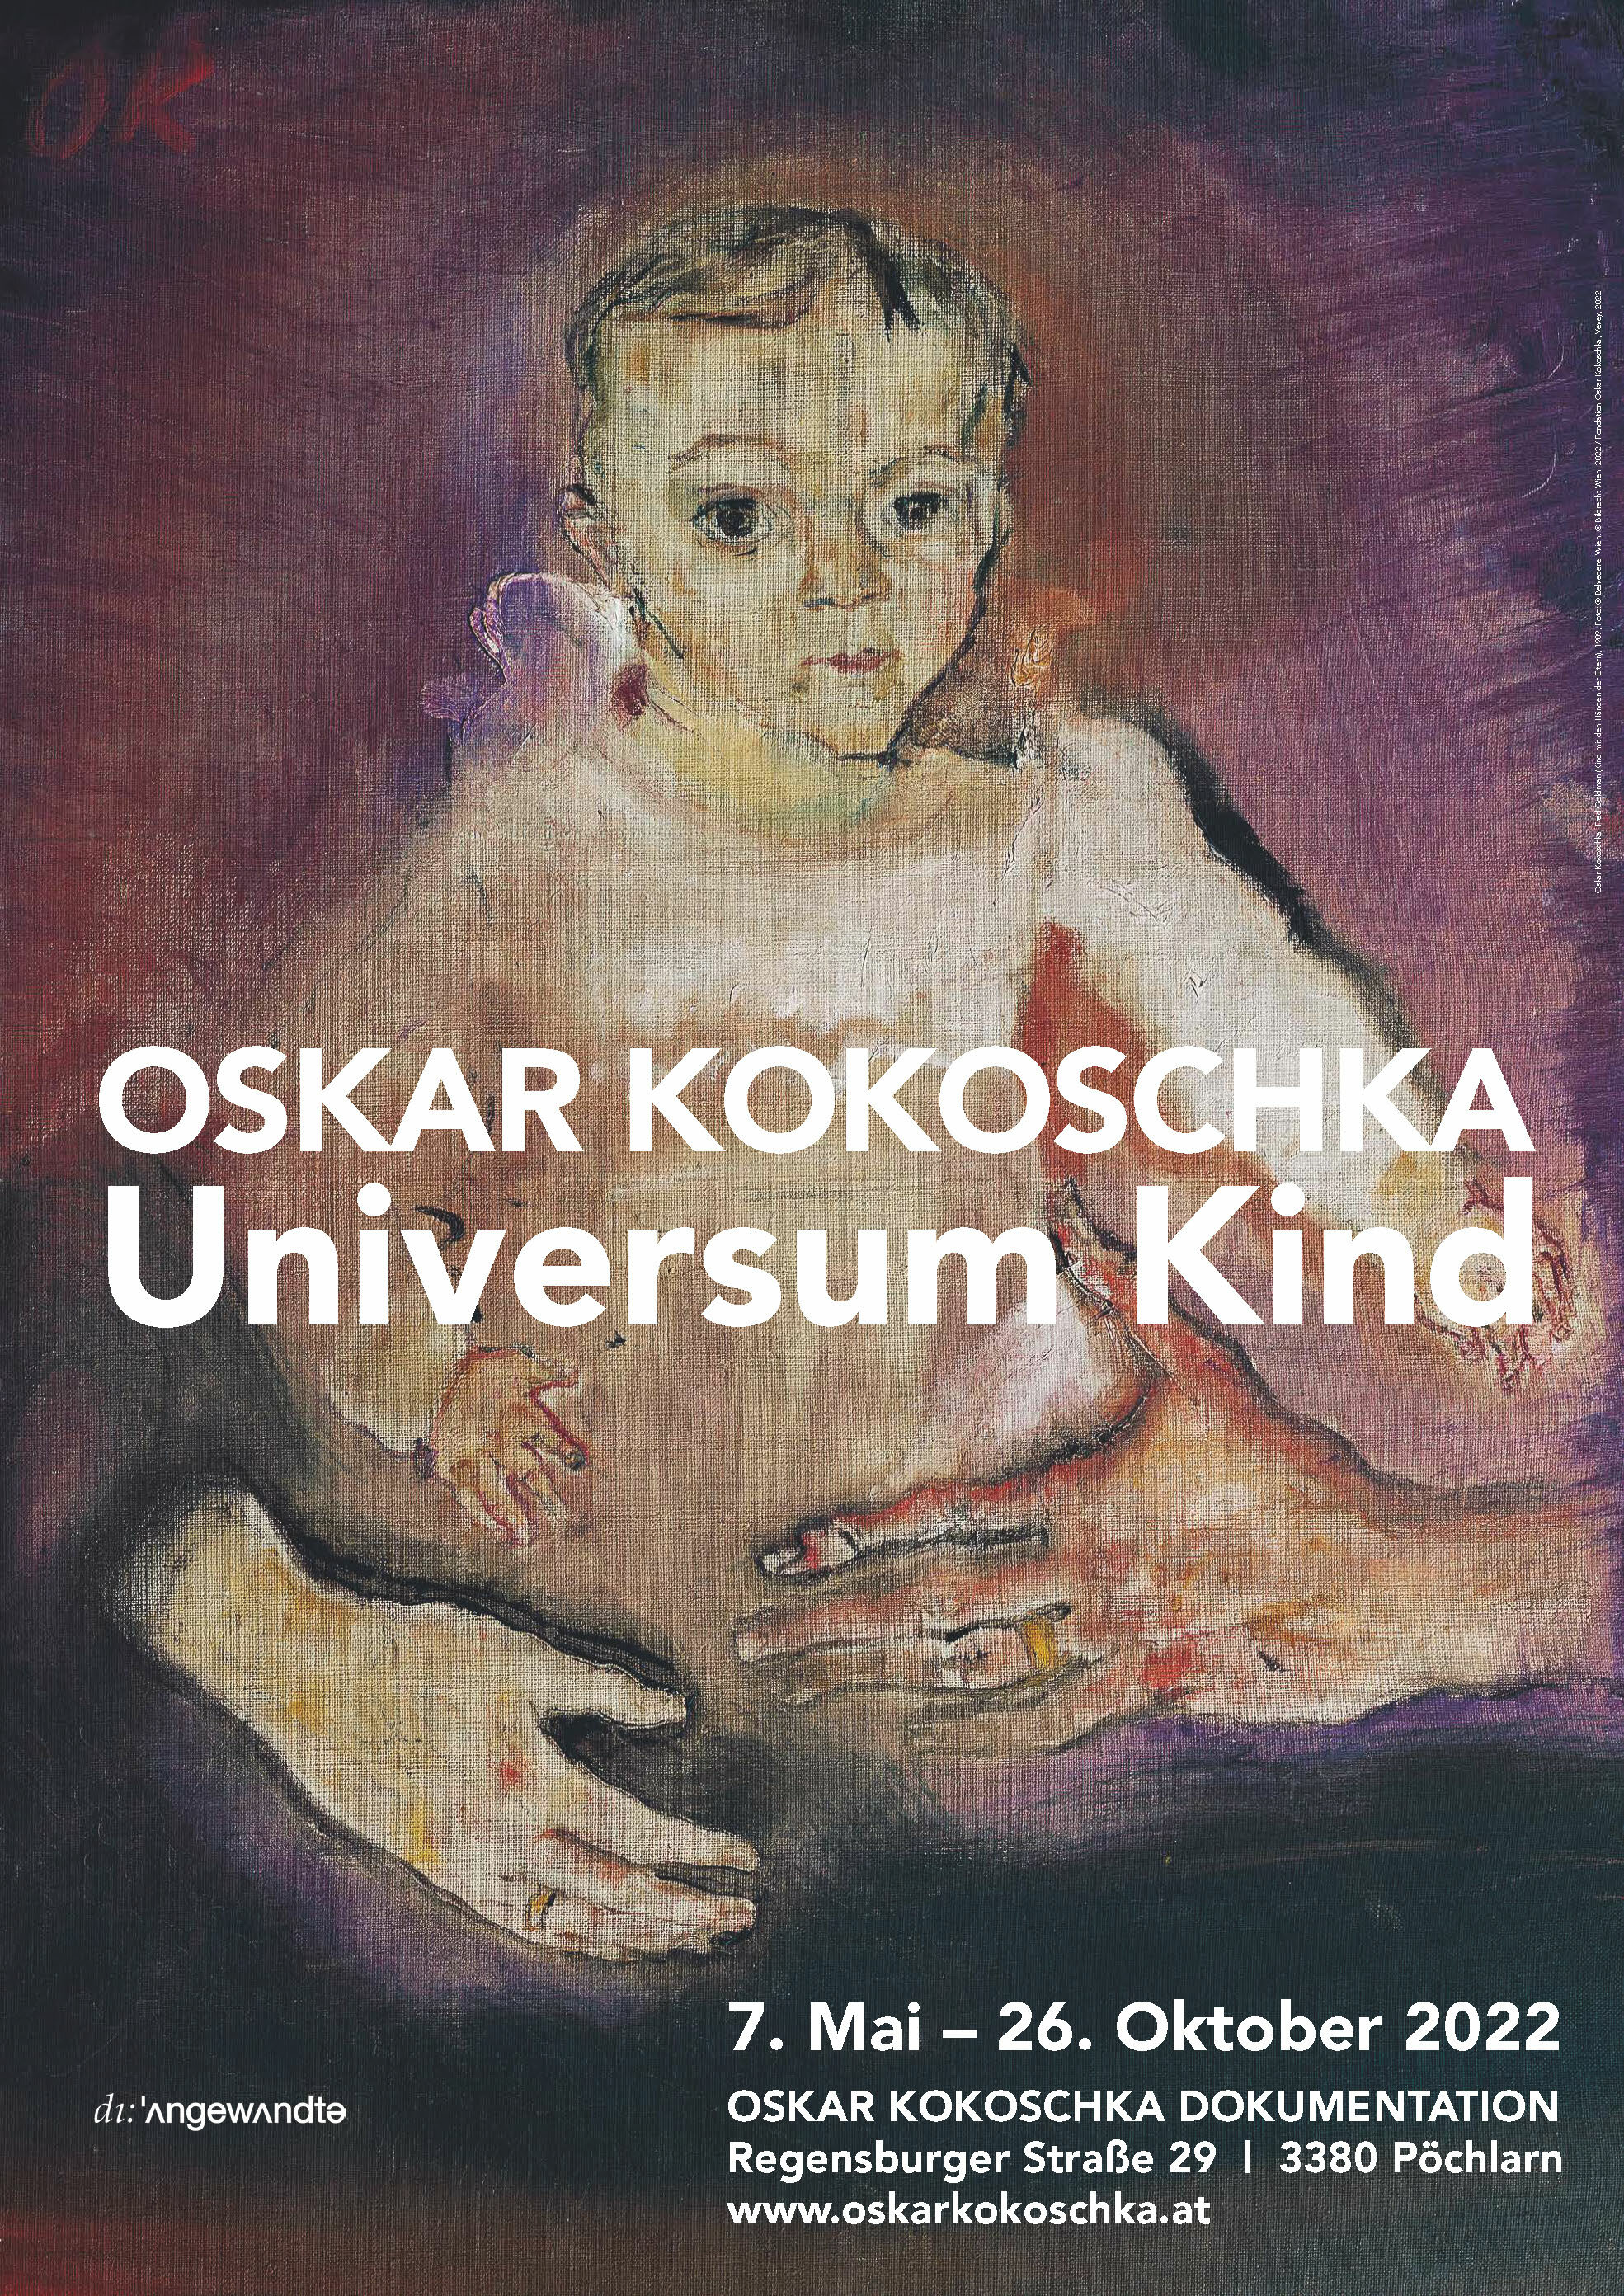 Oskar Kokoschka, Fred Goldman (Kind mit den Händen der Eltern), 1909, © Belvedere, Wien, © Bildrecht, Wien 2022 / Fondation Oskar Kokoschka, Vevey 2022